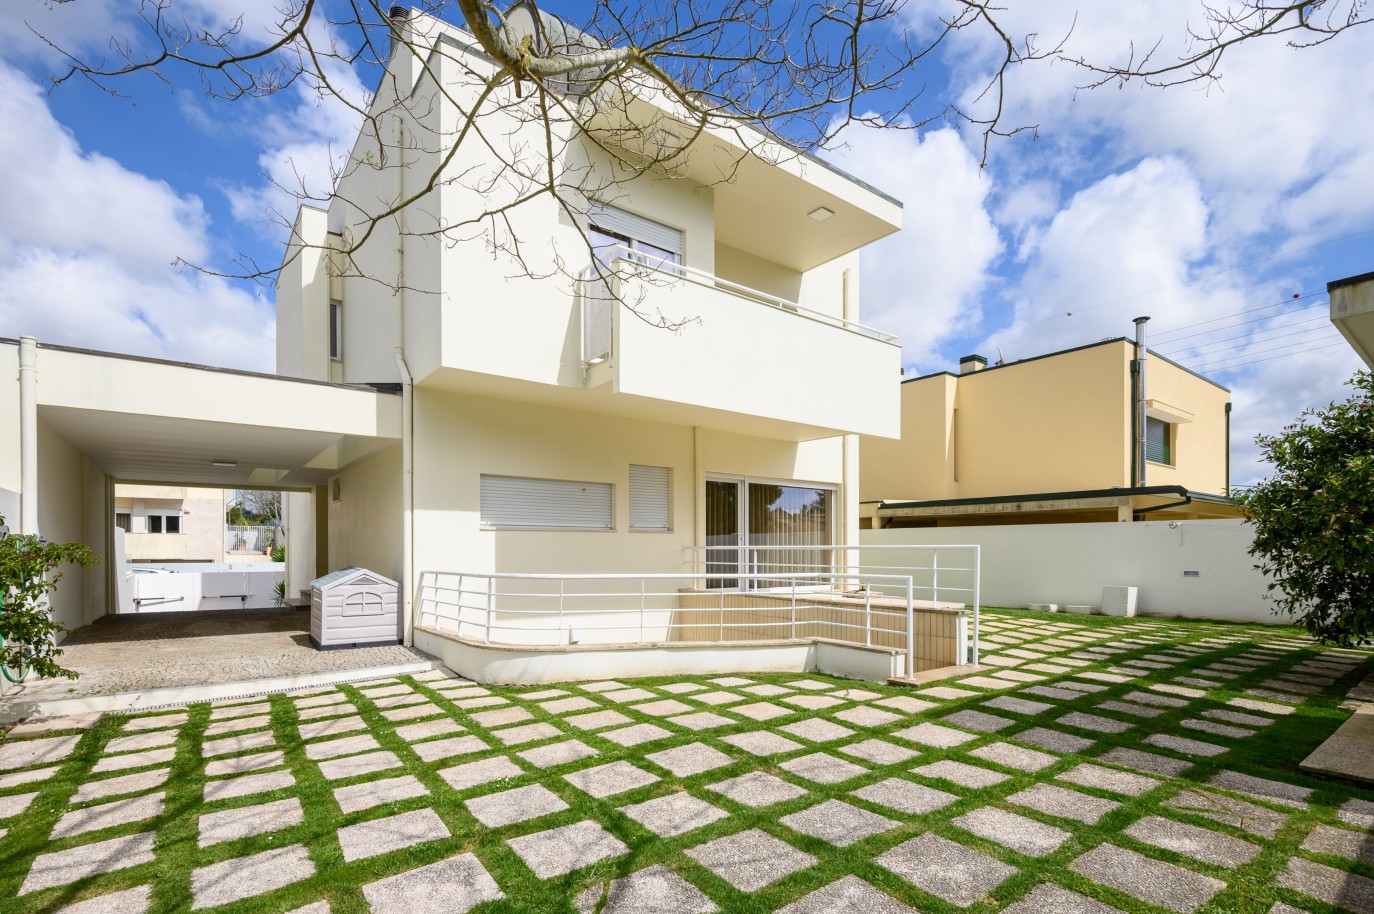 4 Schlafzimmer Villa mit Garten, zu verkaufen, in Moreira, Maia, Portugal_229878